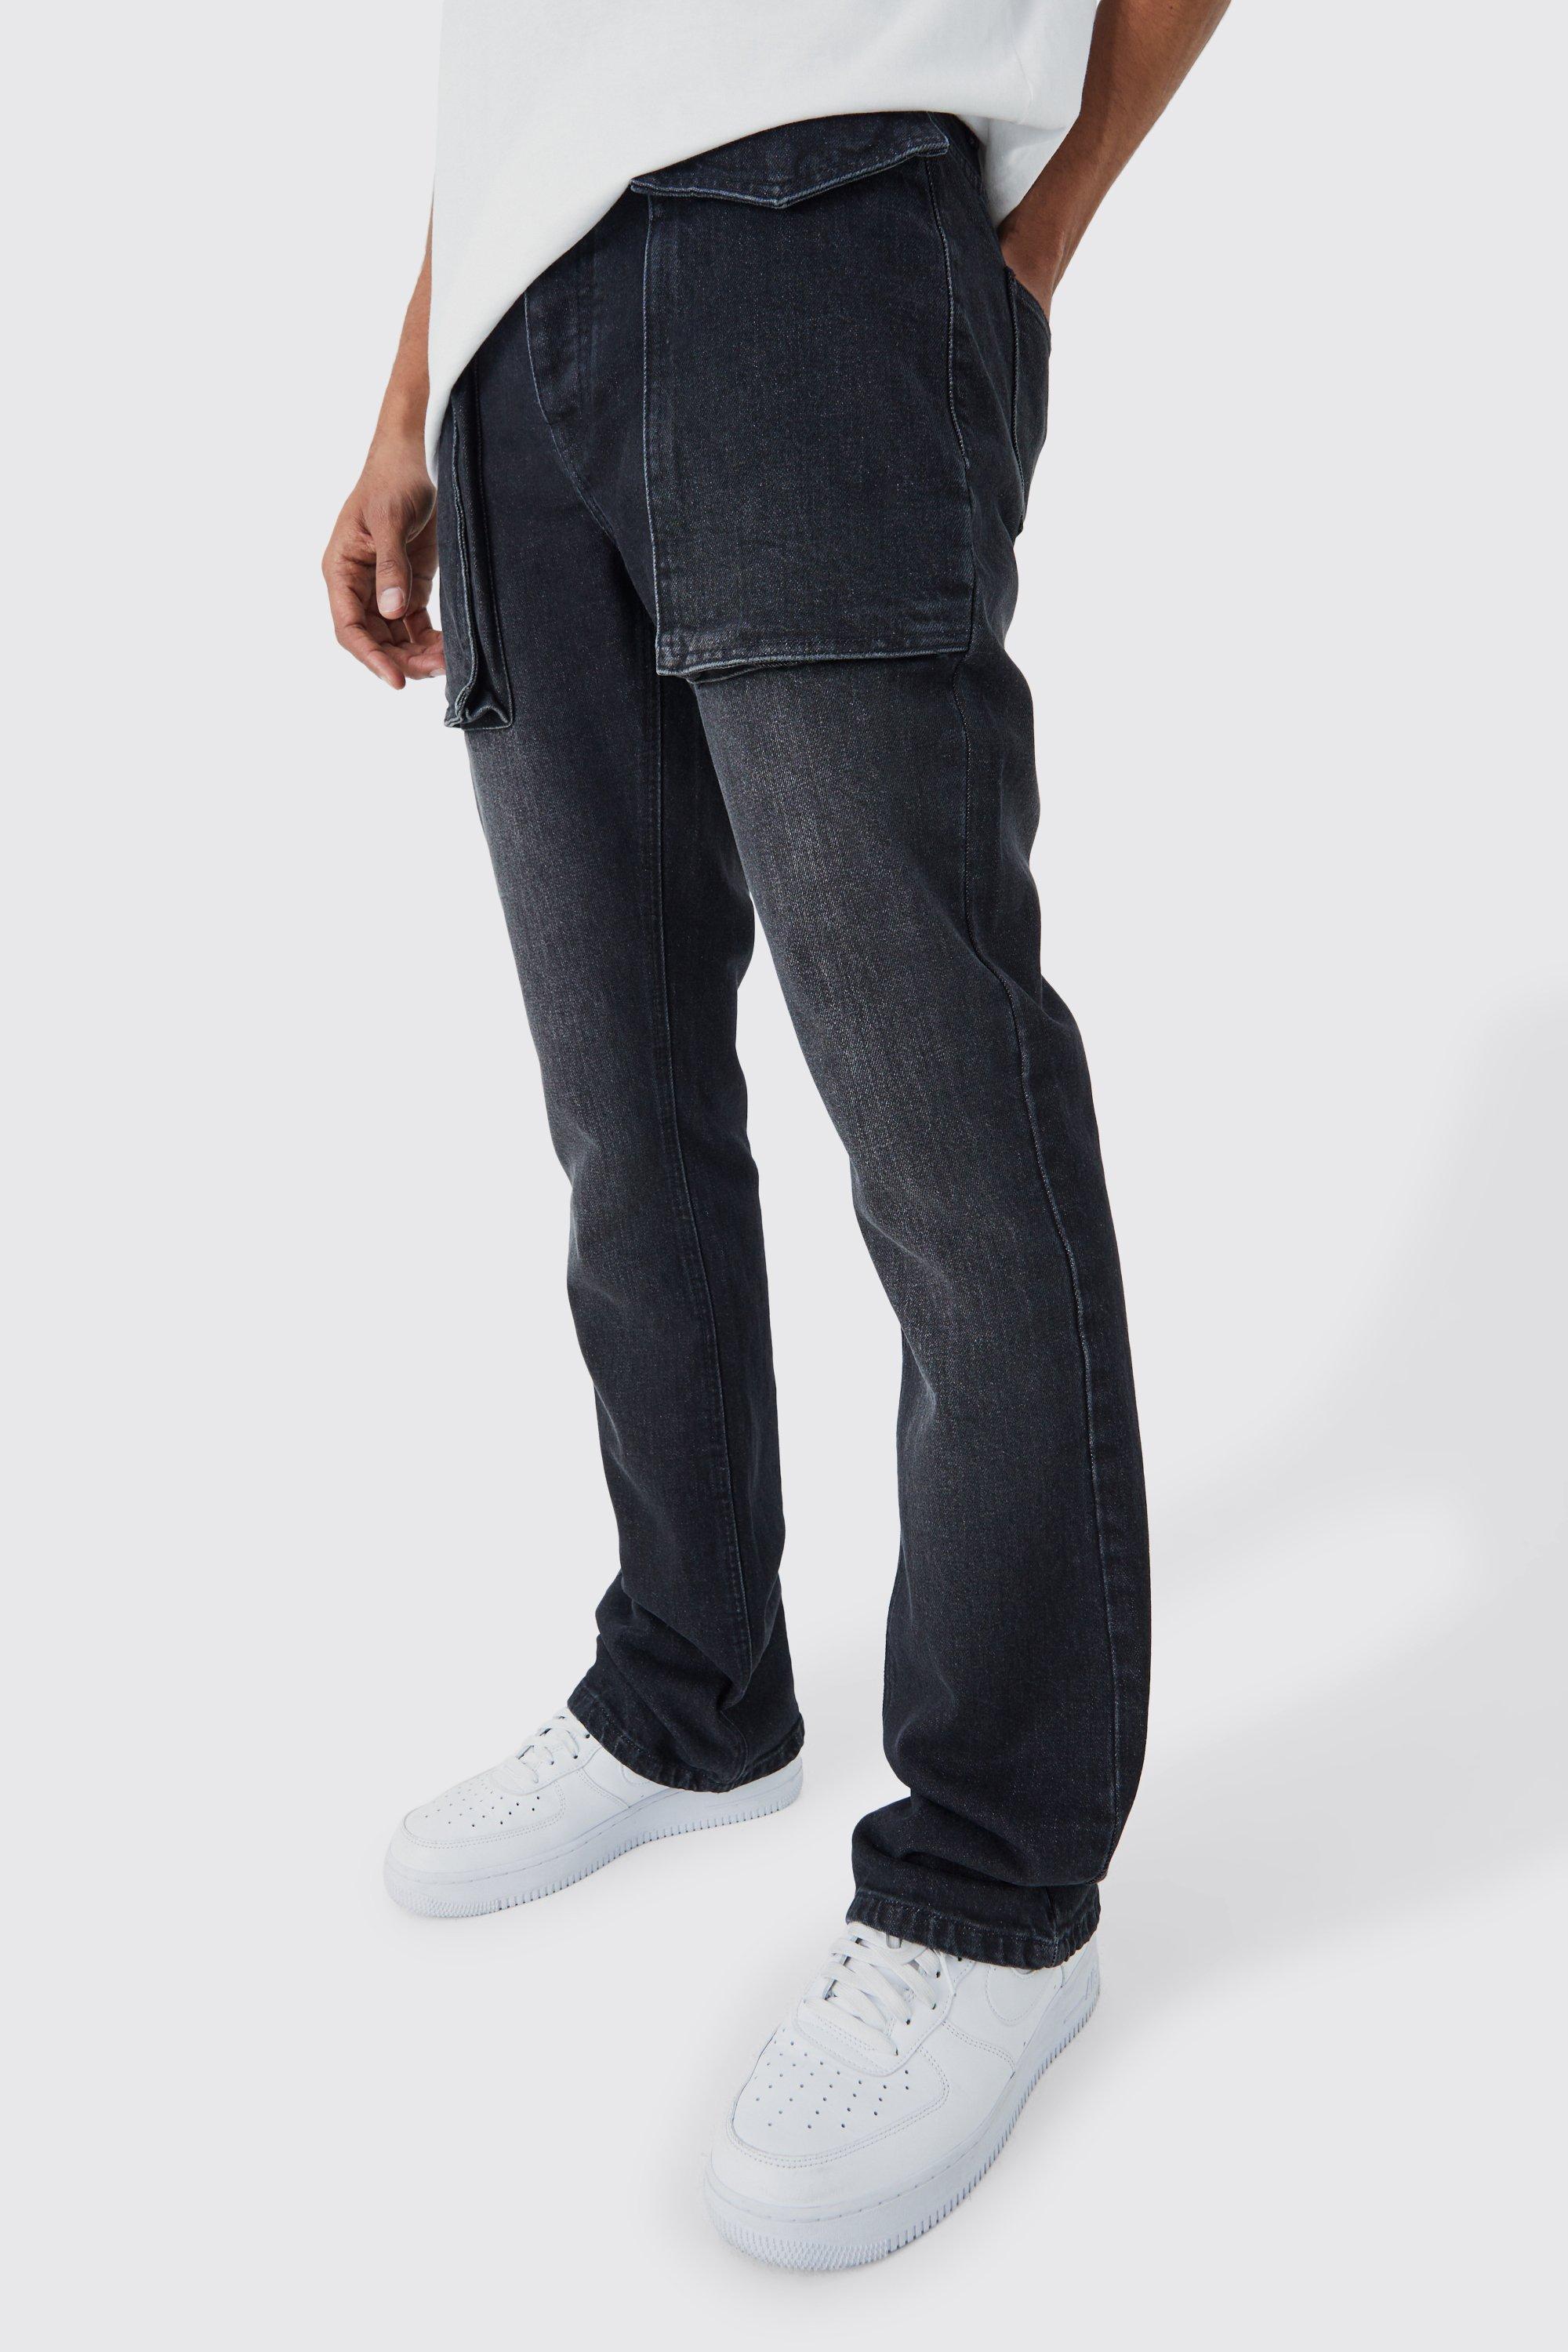 Image of Jeans Slim Fit in denim rigido color antracite con tasche a zampa in rilievo, Grigio